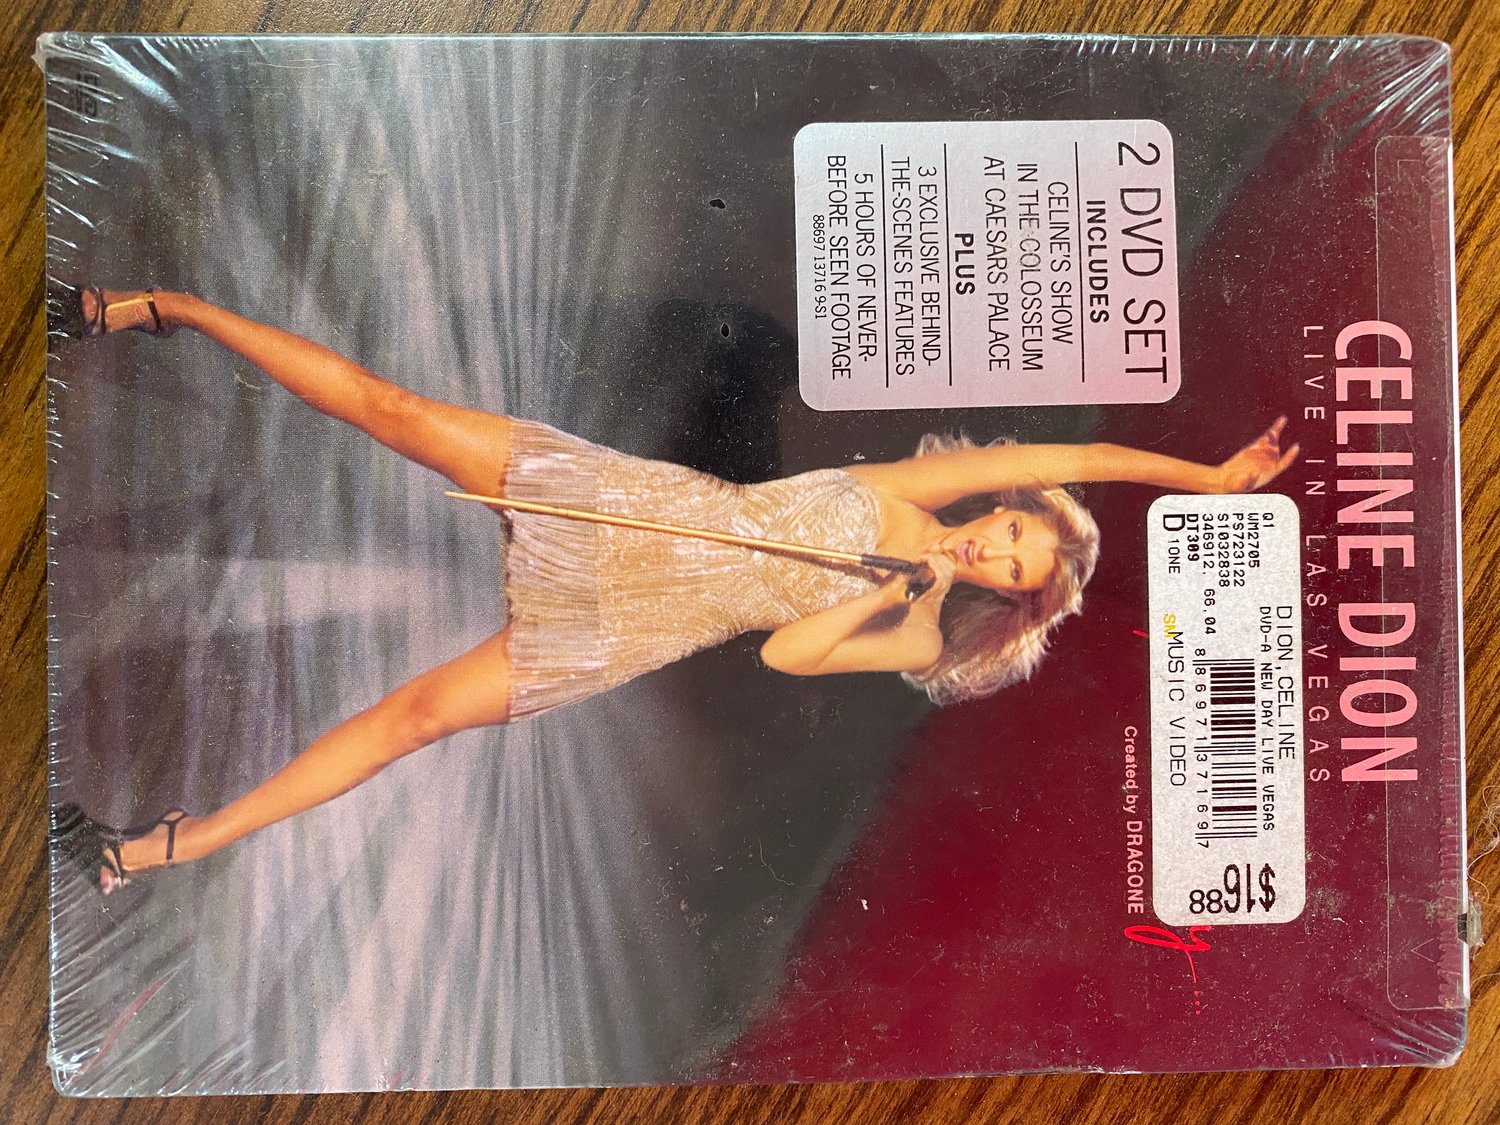 Image of Celine Dion Live in Las Vegas New Sealed 2 DVD Set MSRP $16.88